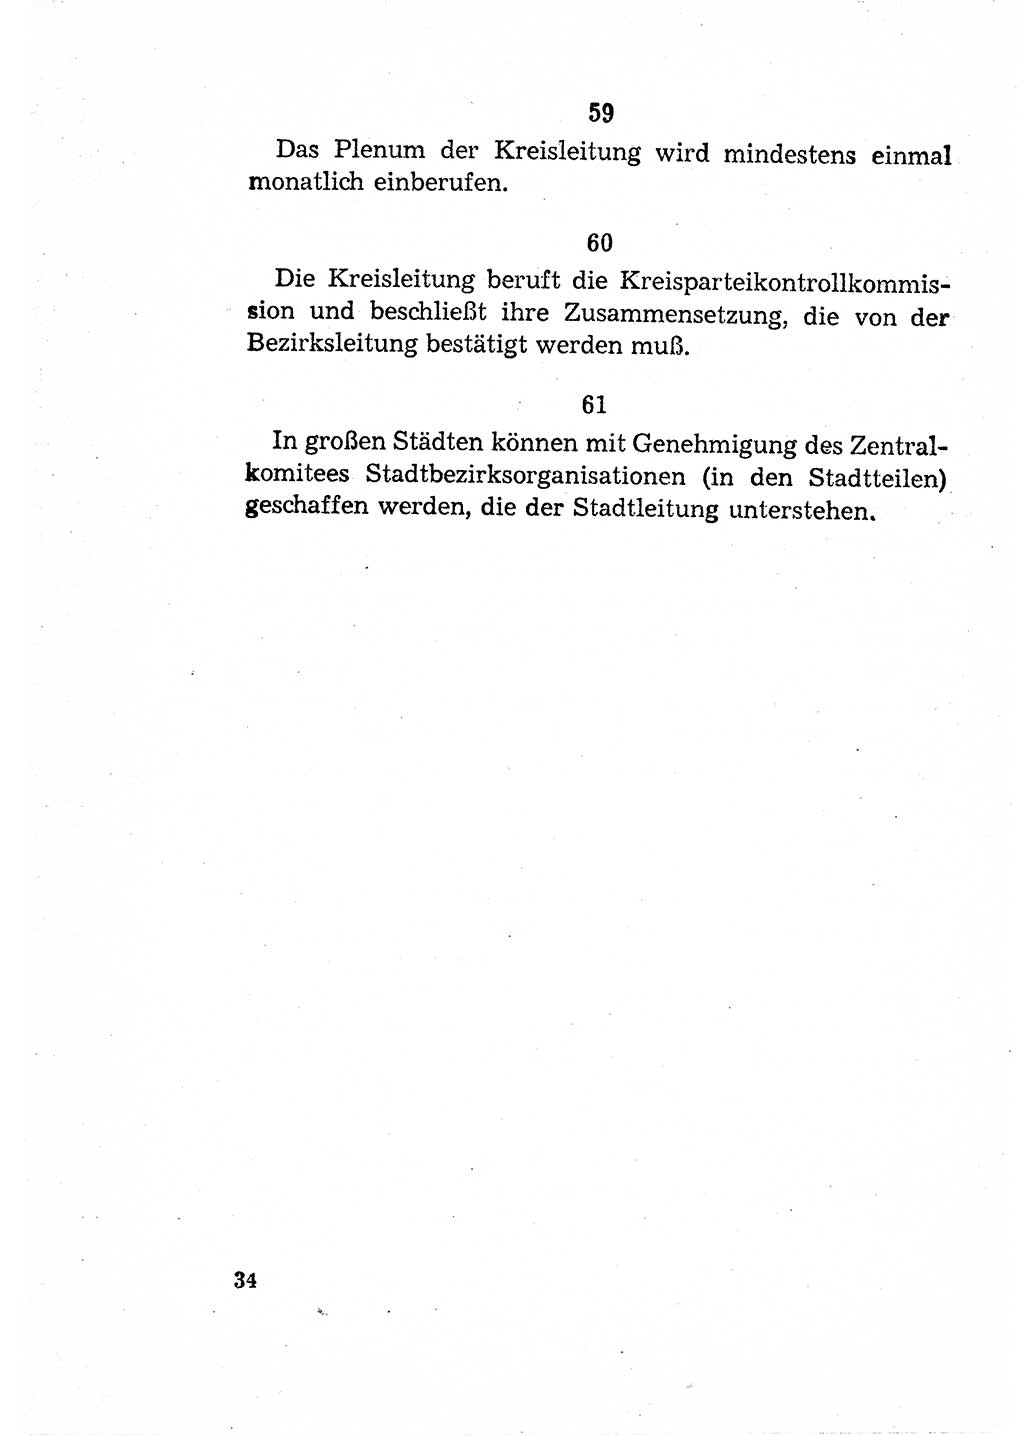 Statut der Sozialistischen Einheitspartei Deutschlands (SED) [Deutsche Demokratische Republik (DDR)] 1958, Seite 34 (St. SED DDR 1958, S. 34)